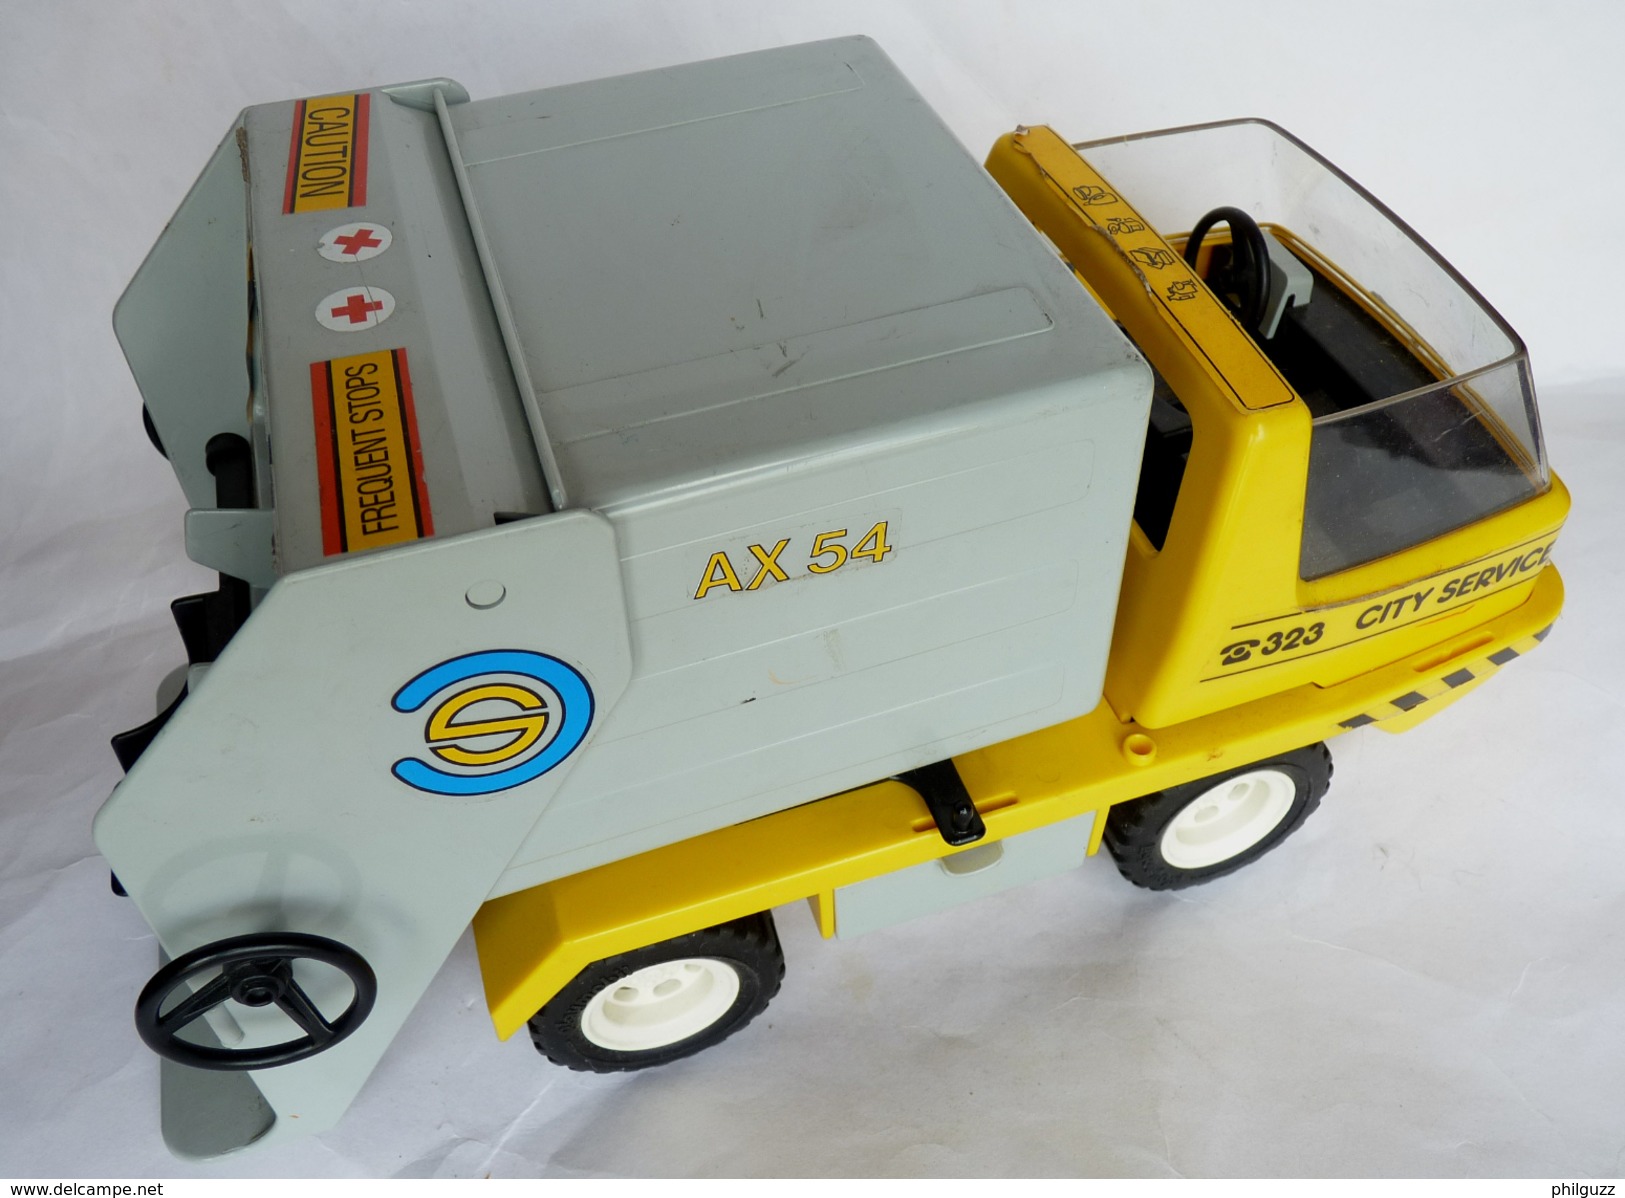 Camion poubelle Playmobil 3780 - jouets rétro jeux de société figurines  et objets vintage